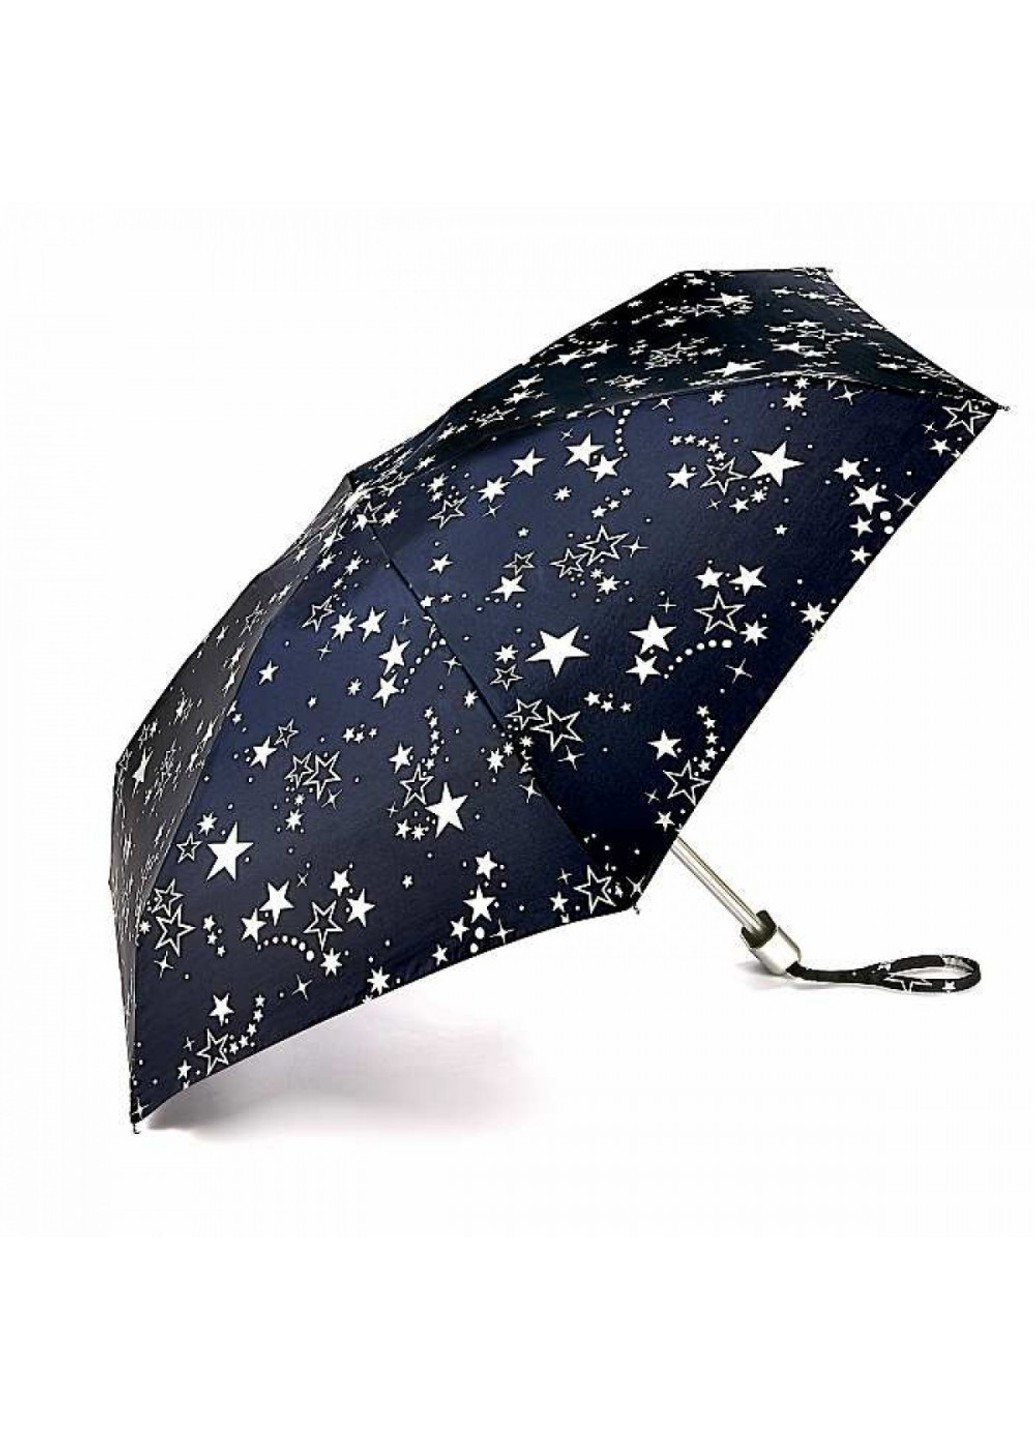 Зонт женский механический L501 Tiny-2 Night Sky (Ночное небо) Fulton (262087182)